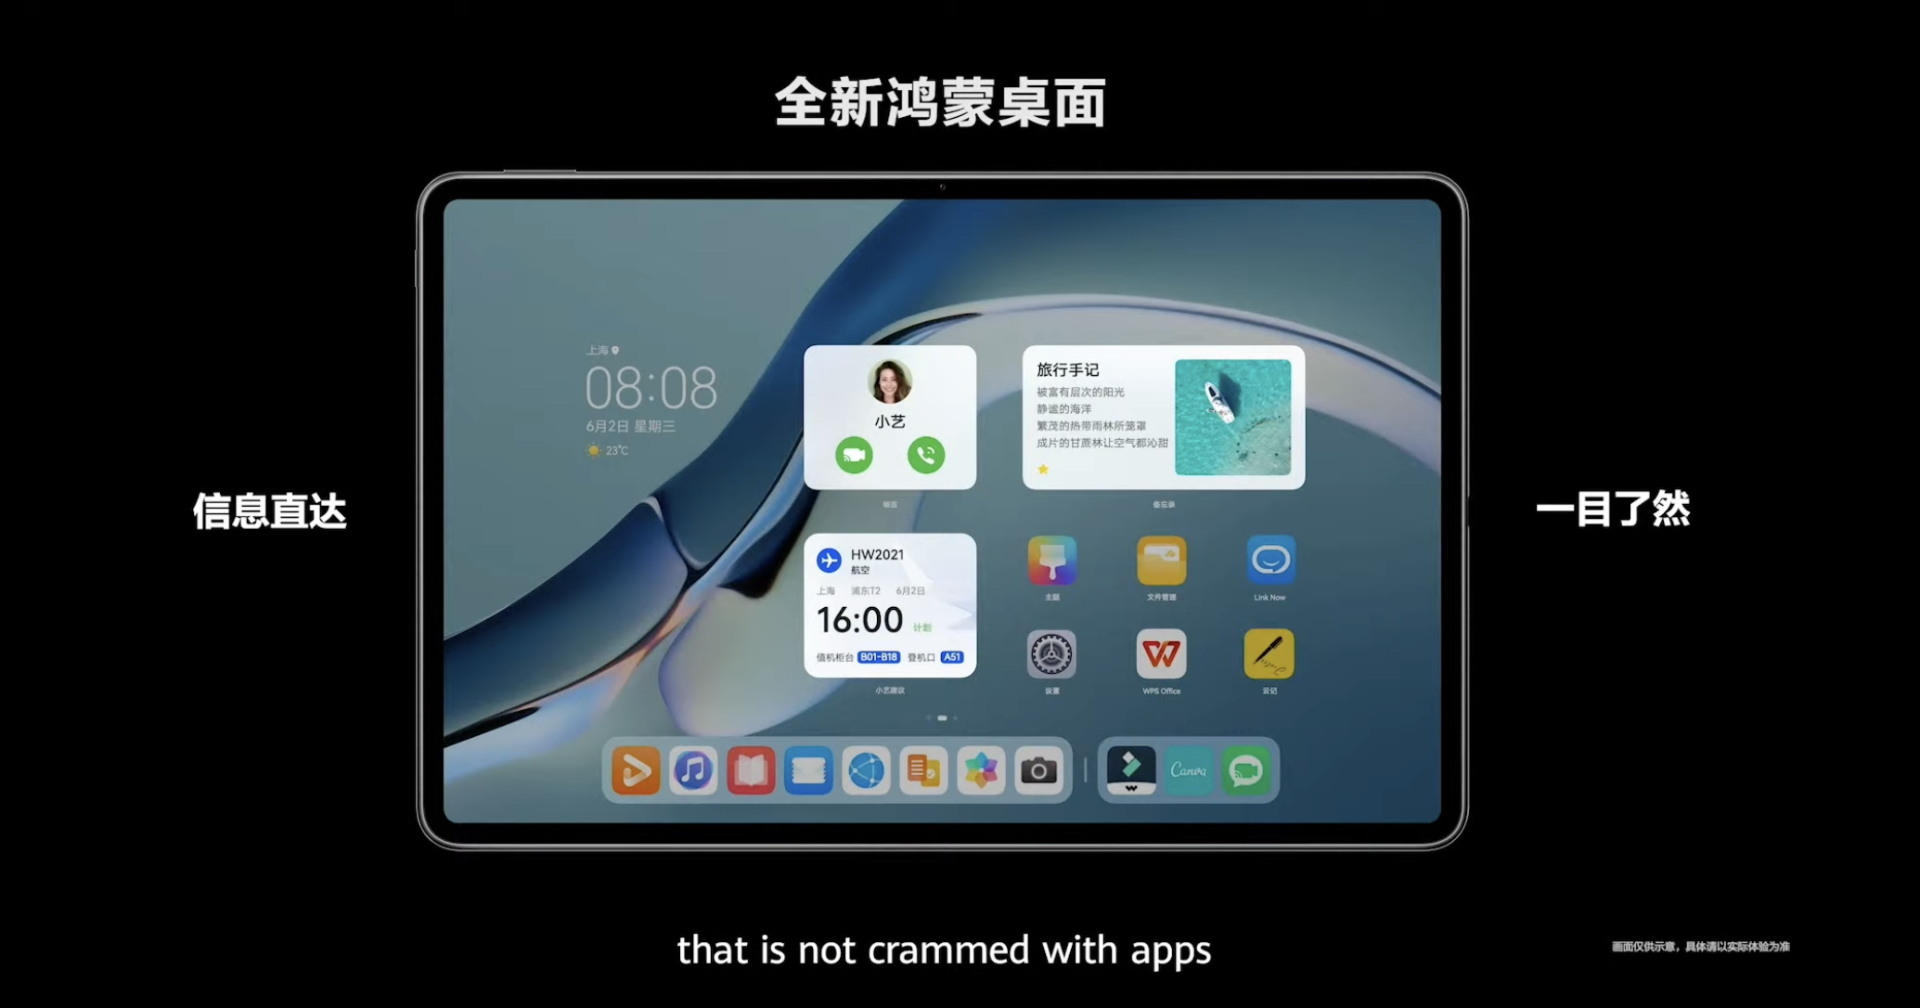 เปิดตัว Huawei MatePad Pro รุ่นใหม่ มาพร้อมกับ HarmonyOS